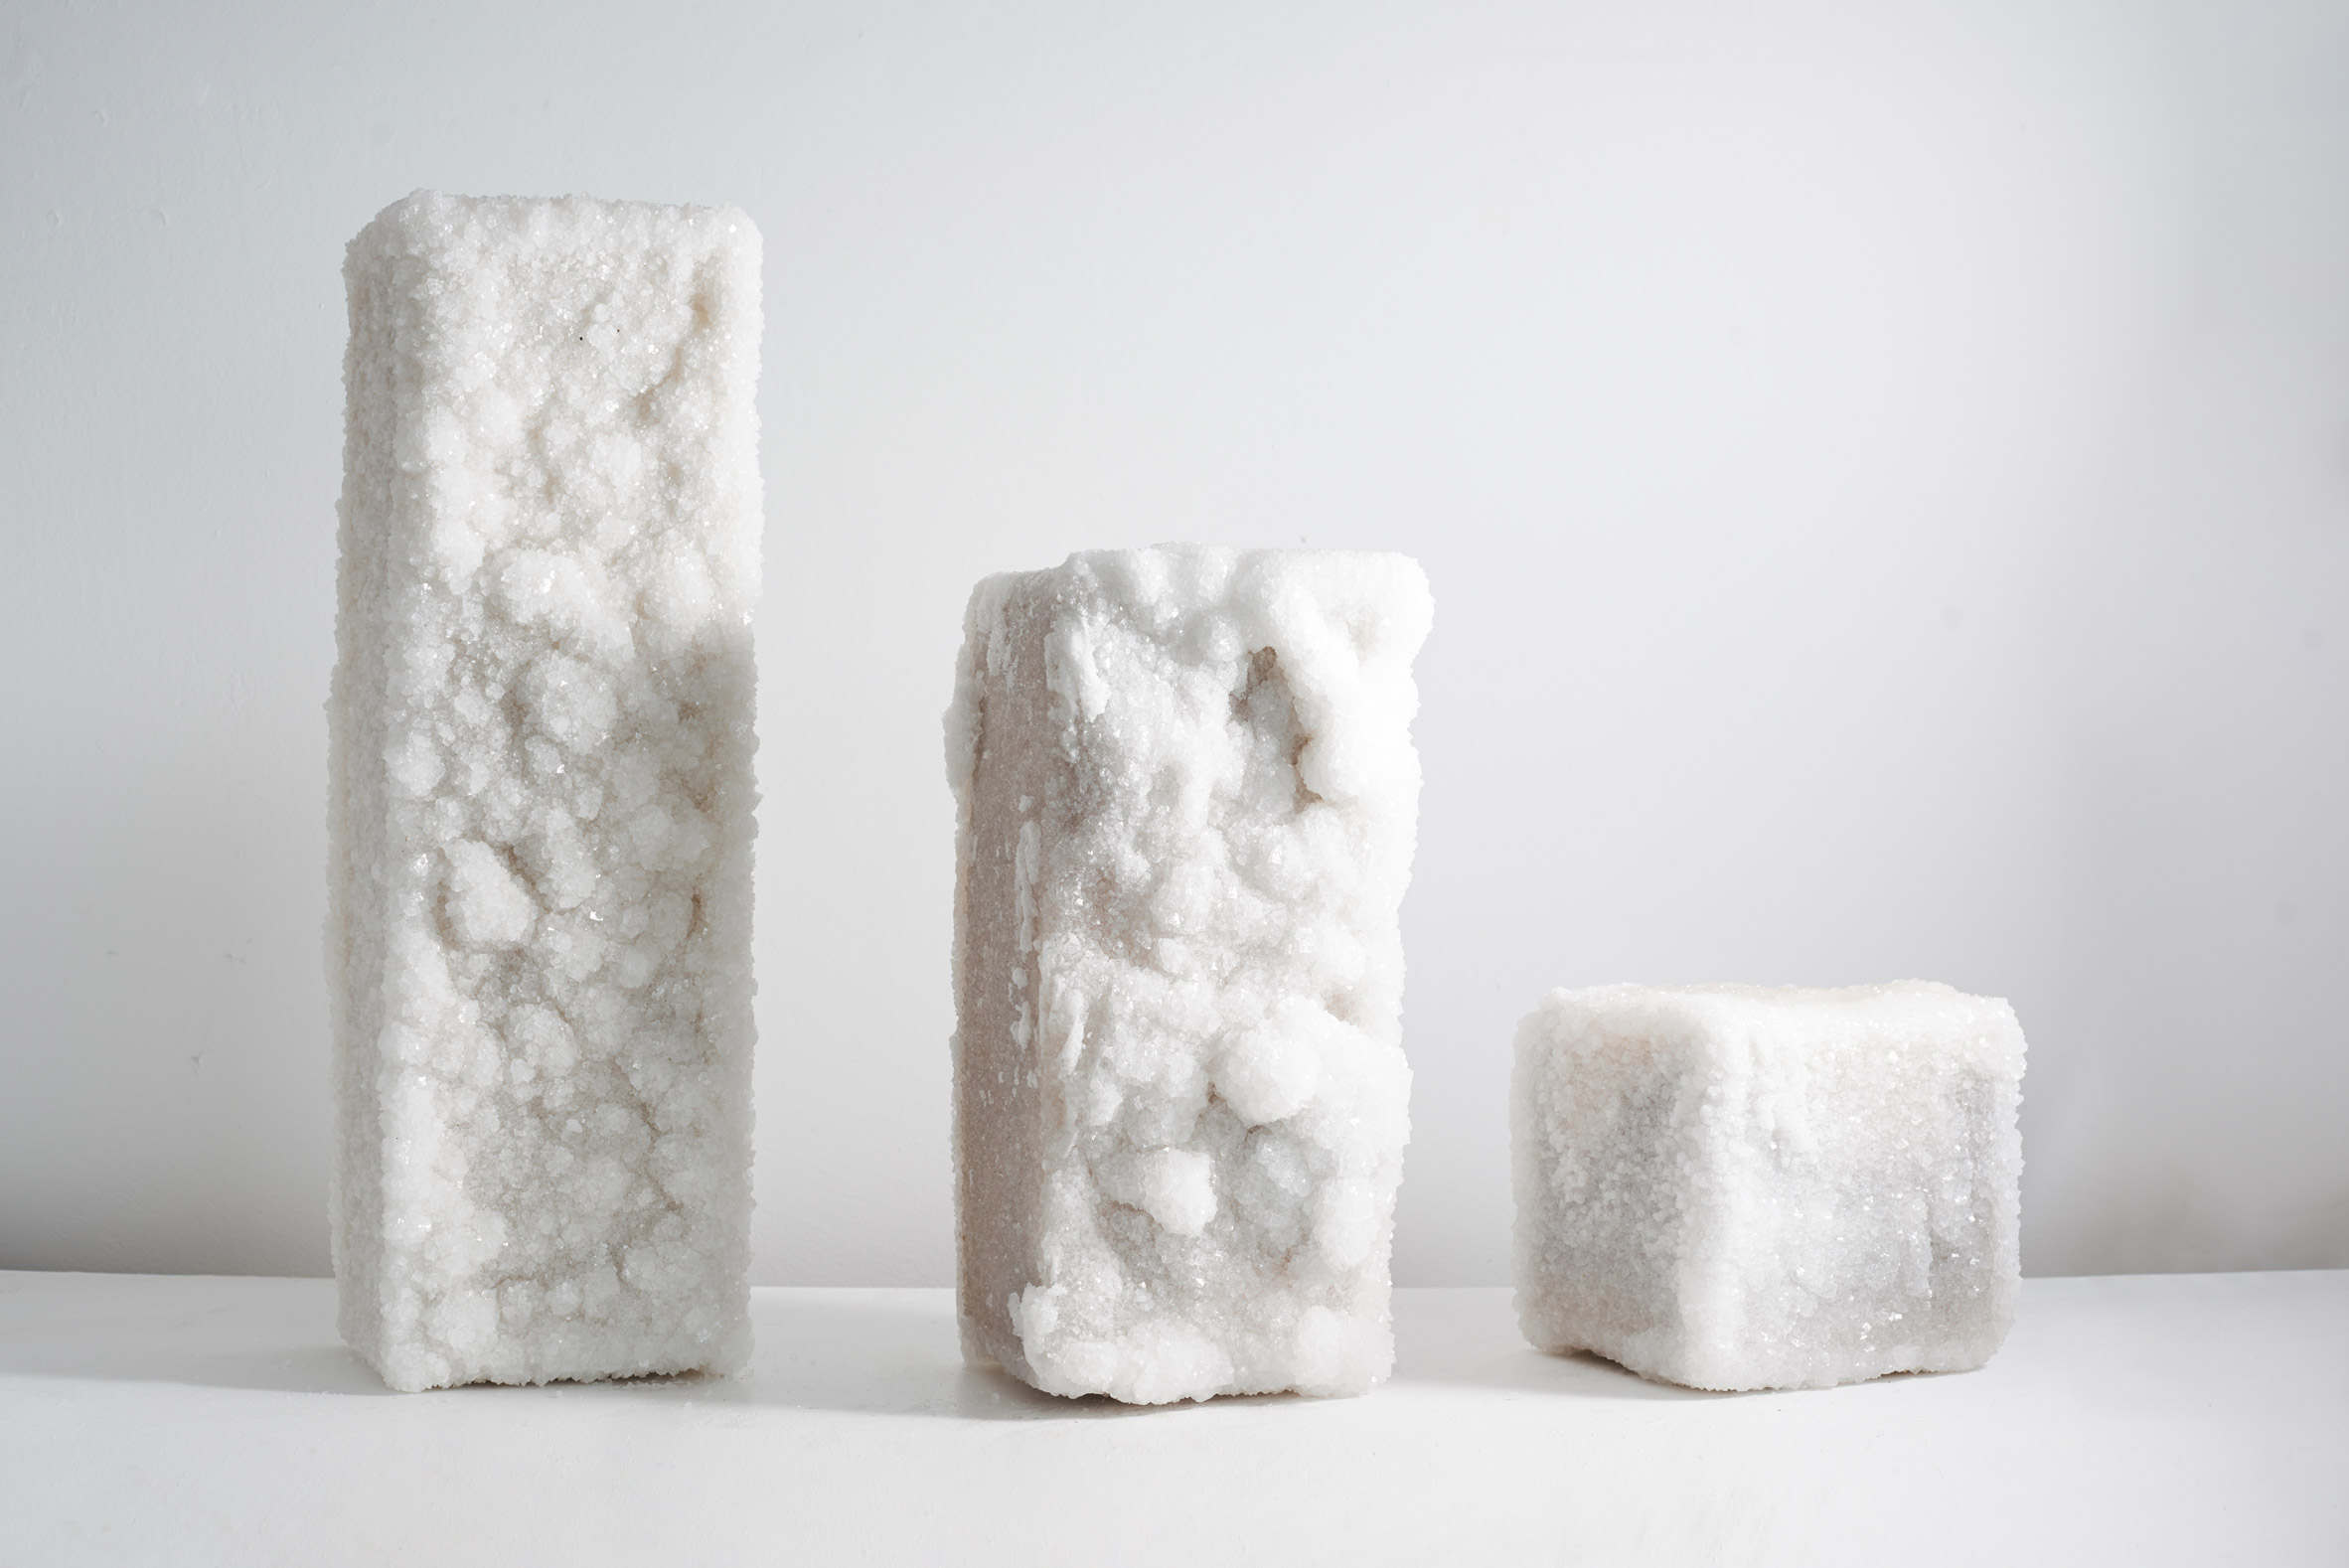 Crystal-covered salt blocks